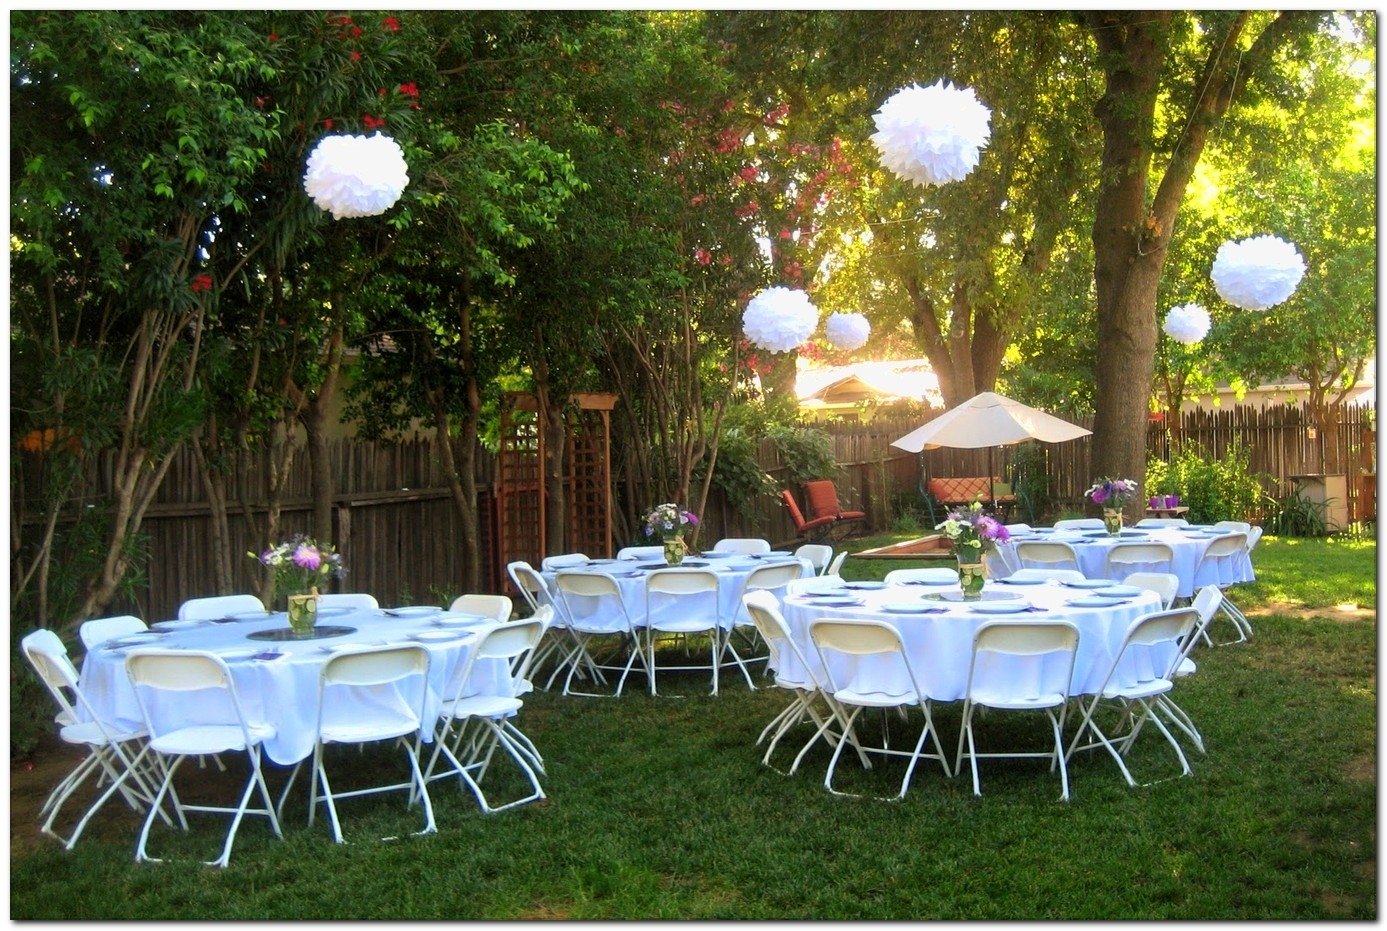 10 Cute Small Wedding Ideas On A Budget breathtaking small backyard wedding ideas on a budget pics ideas 2022